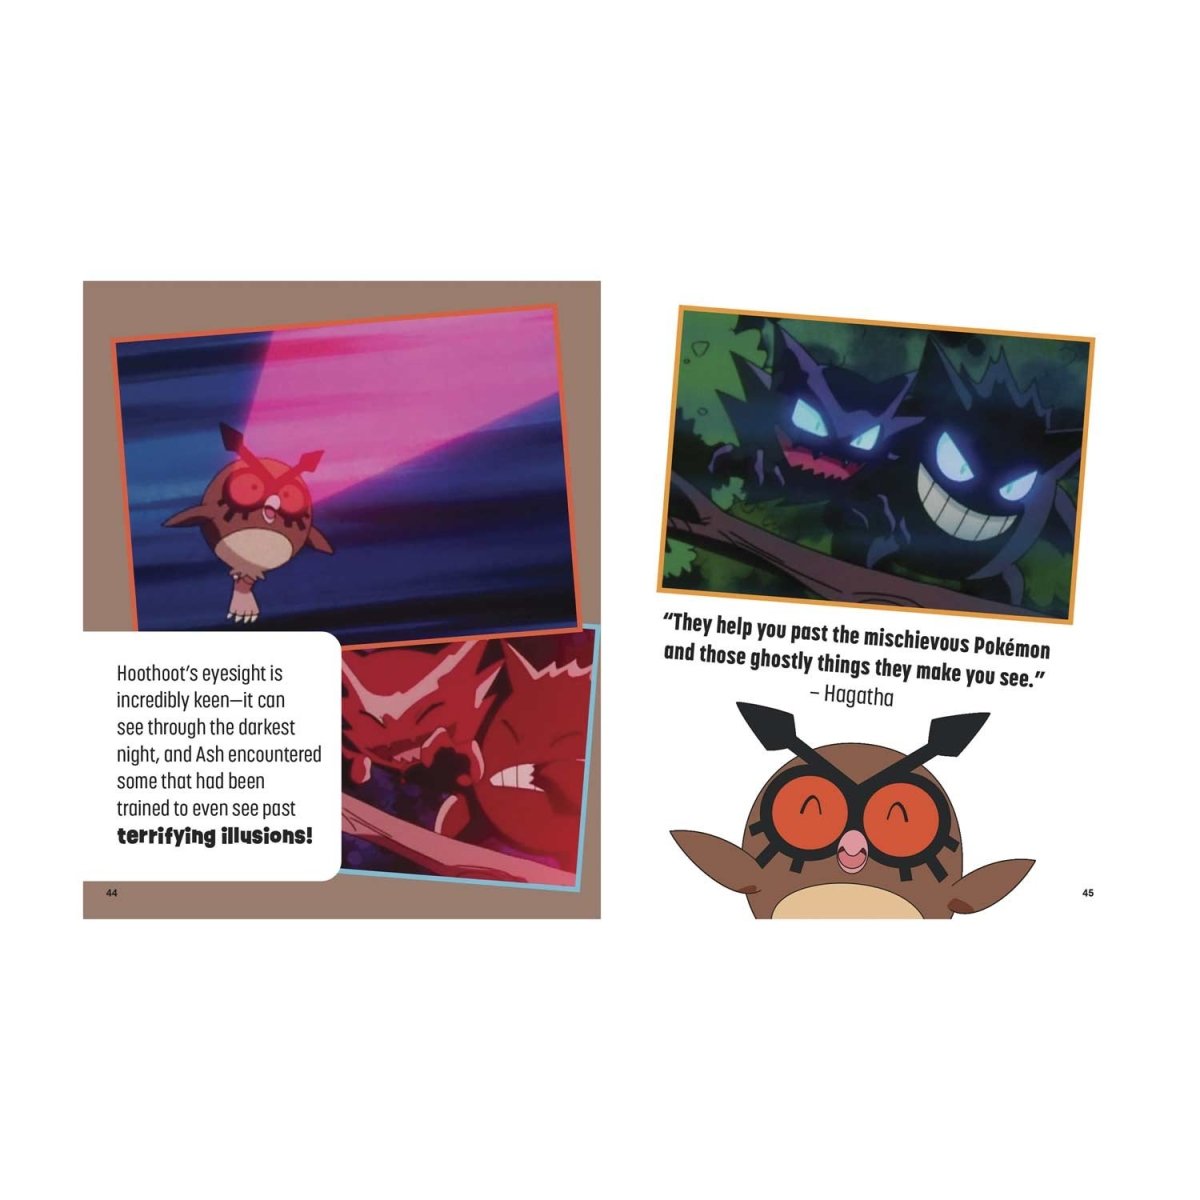 Pokémons Iniciais - Pokémon Adventures Edição Johto